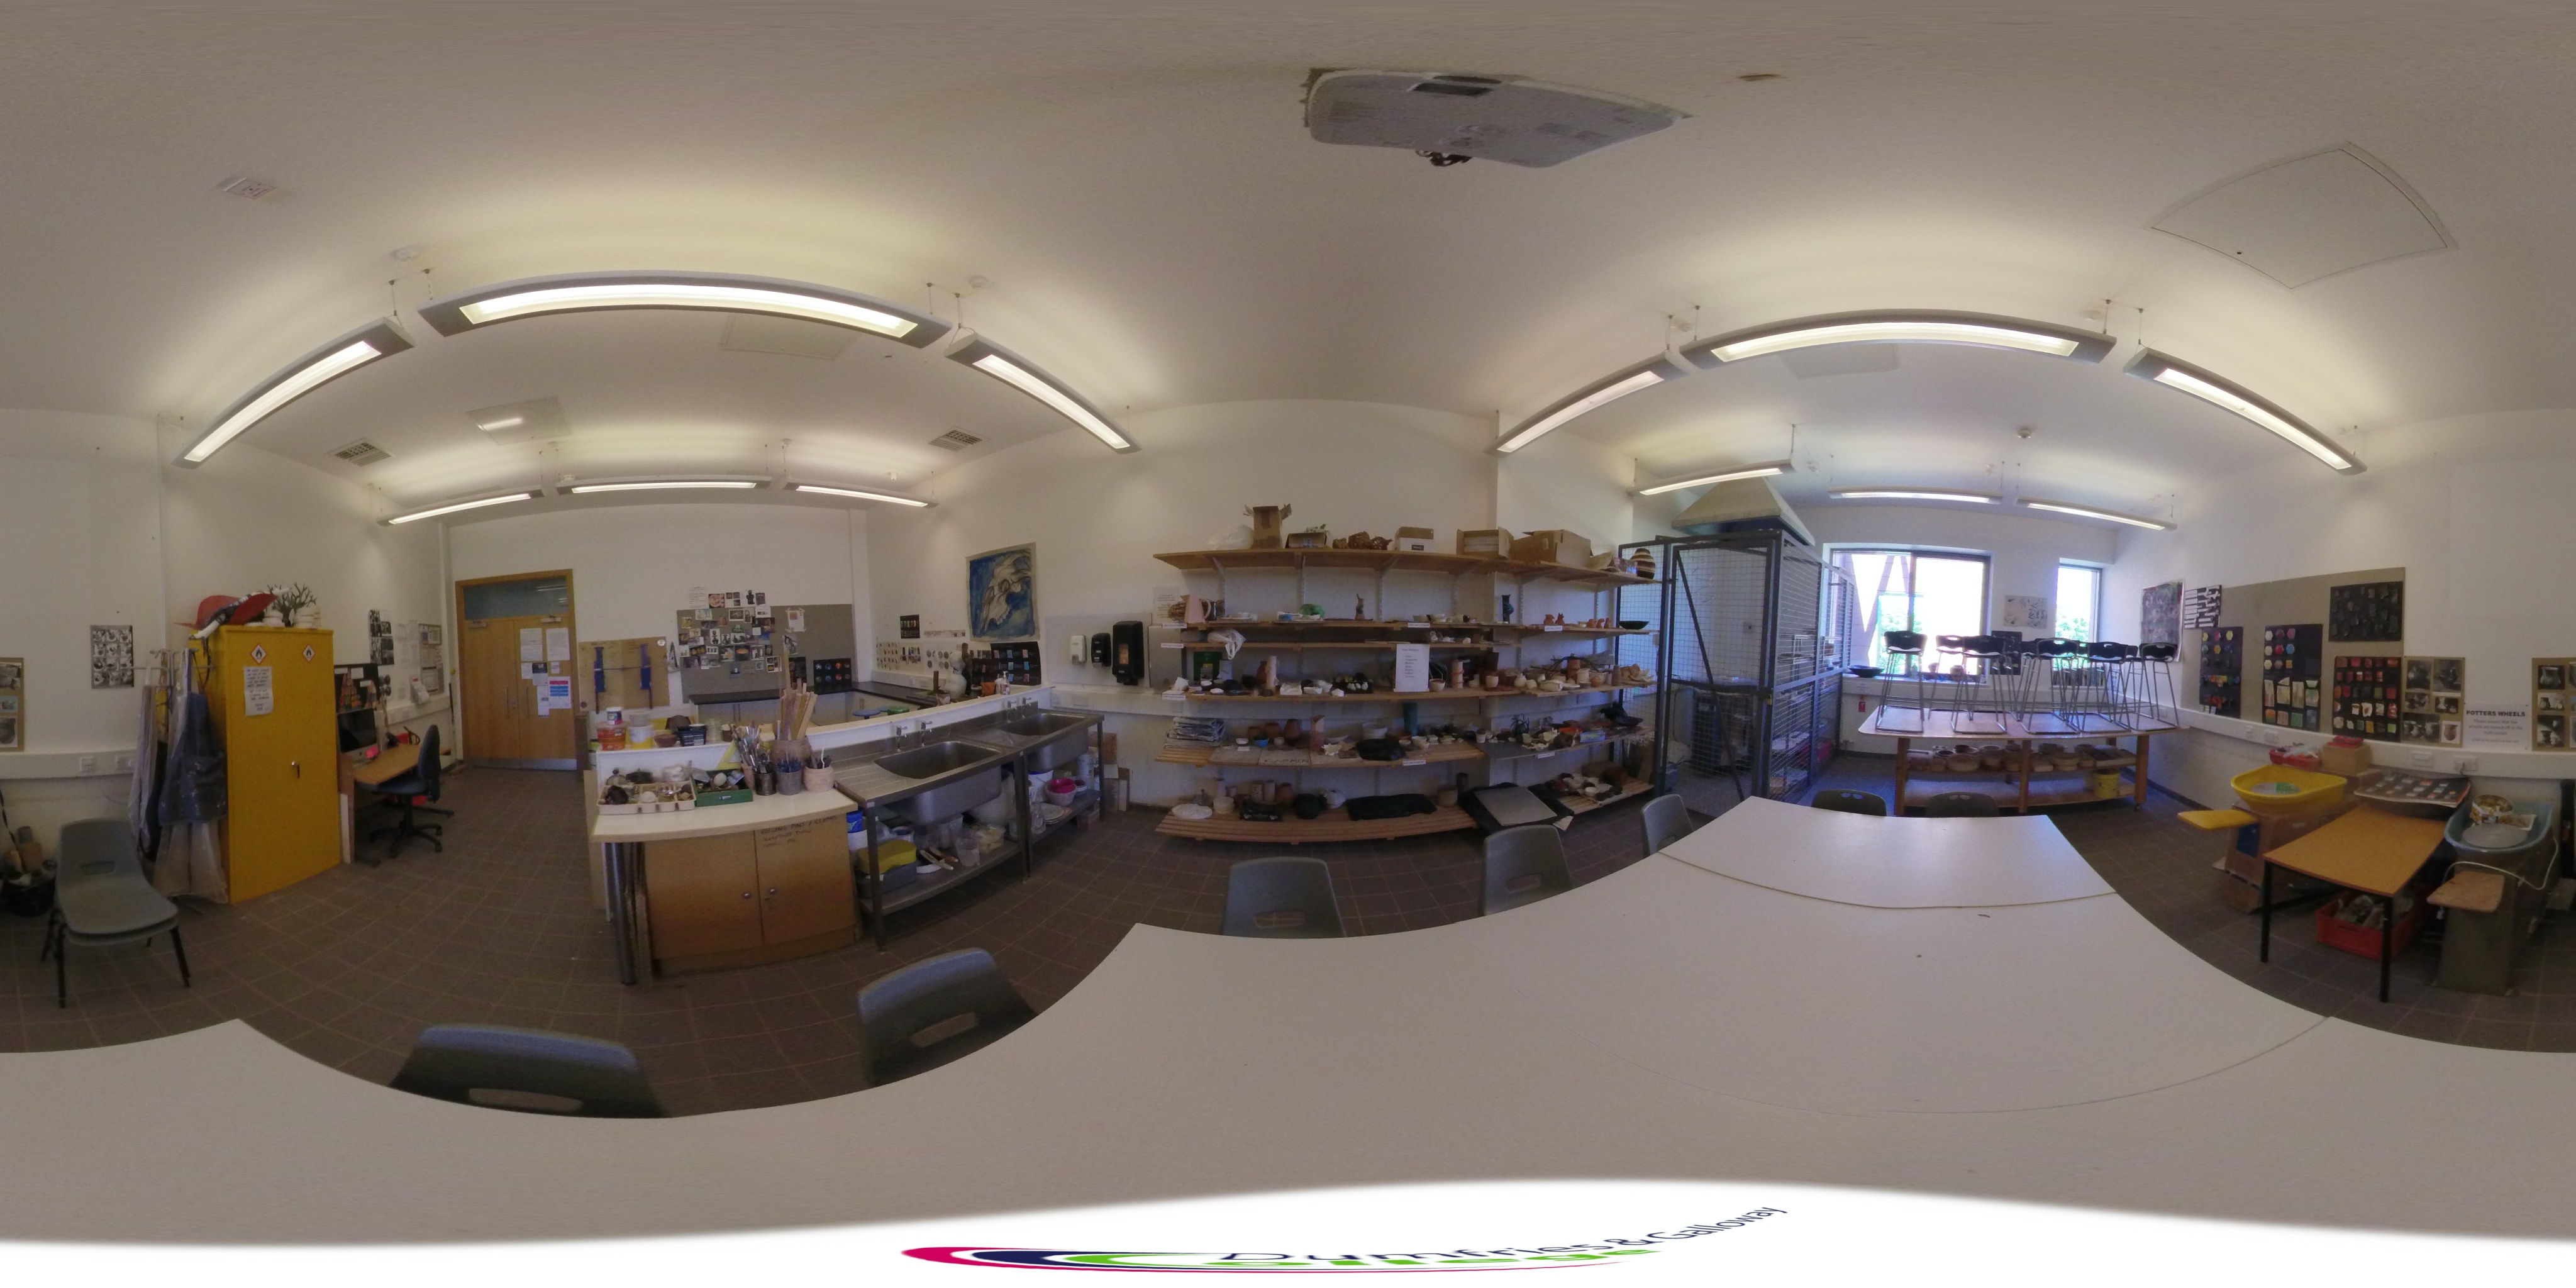 360 Photo of The pottery studio